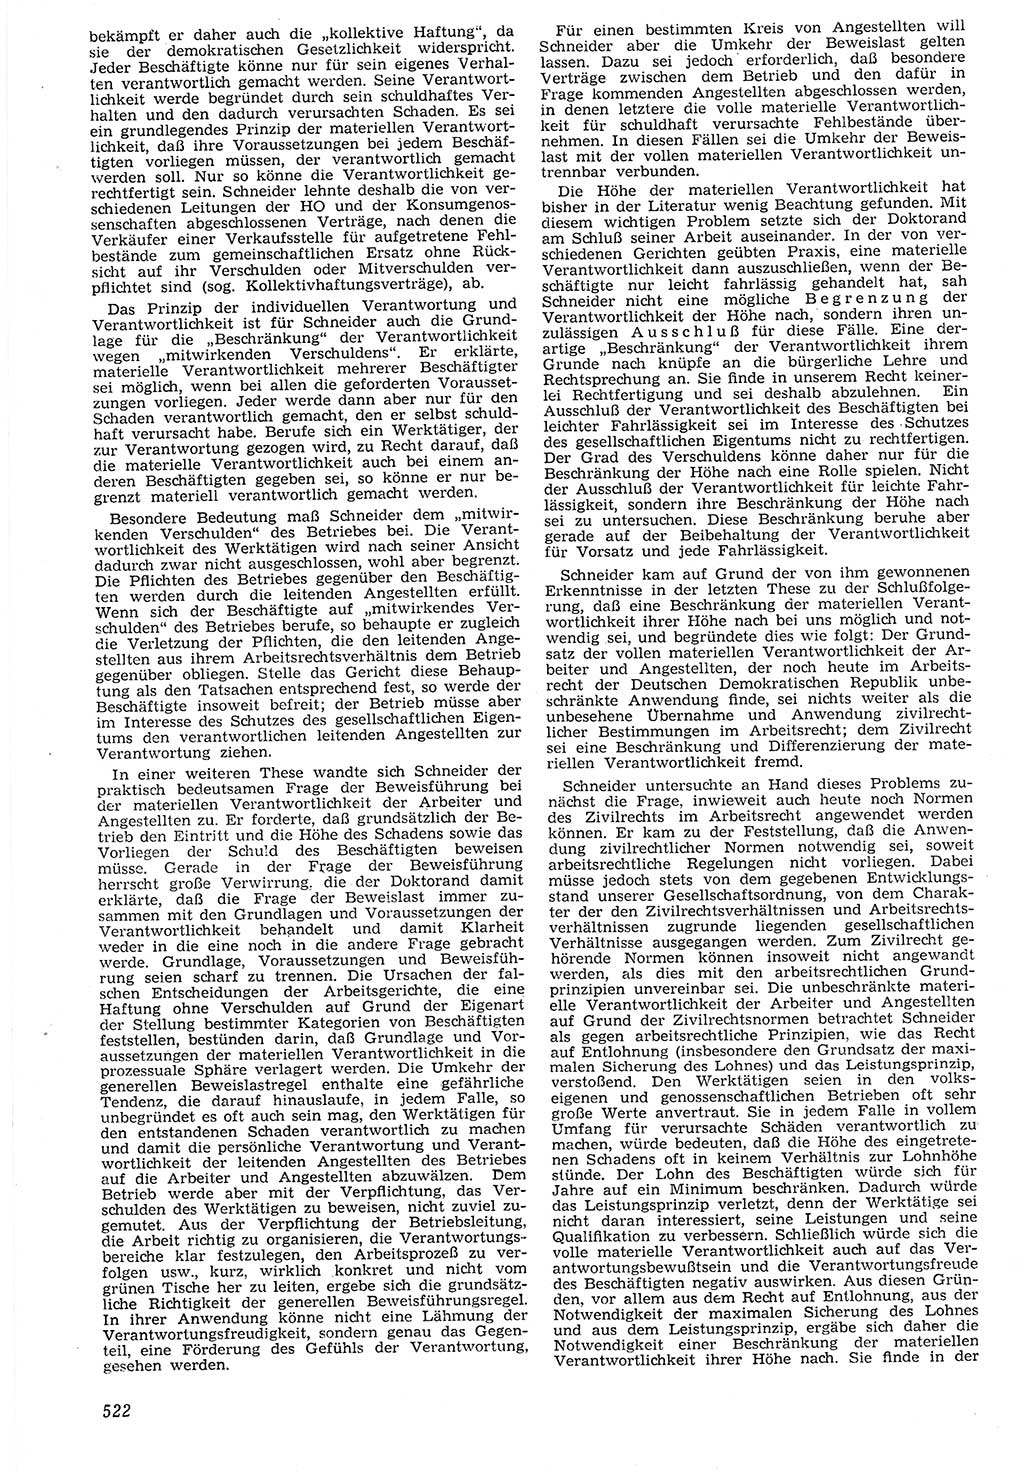 Neue Justiz (NJ), Zeitschrift für Recht und Rechtswissenschaft [Deutsche Demokratische Republik (DDR)], 7. Jahrgang 1953, Seite 522 (NJ DDR 1953, S. 522)